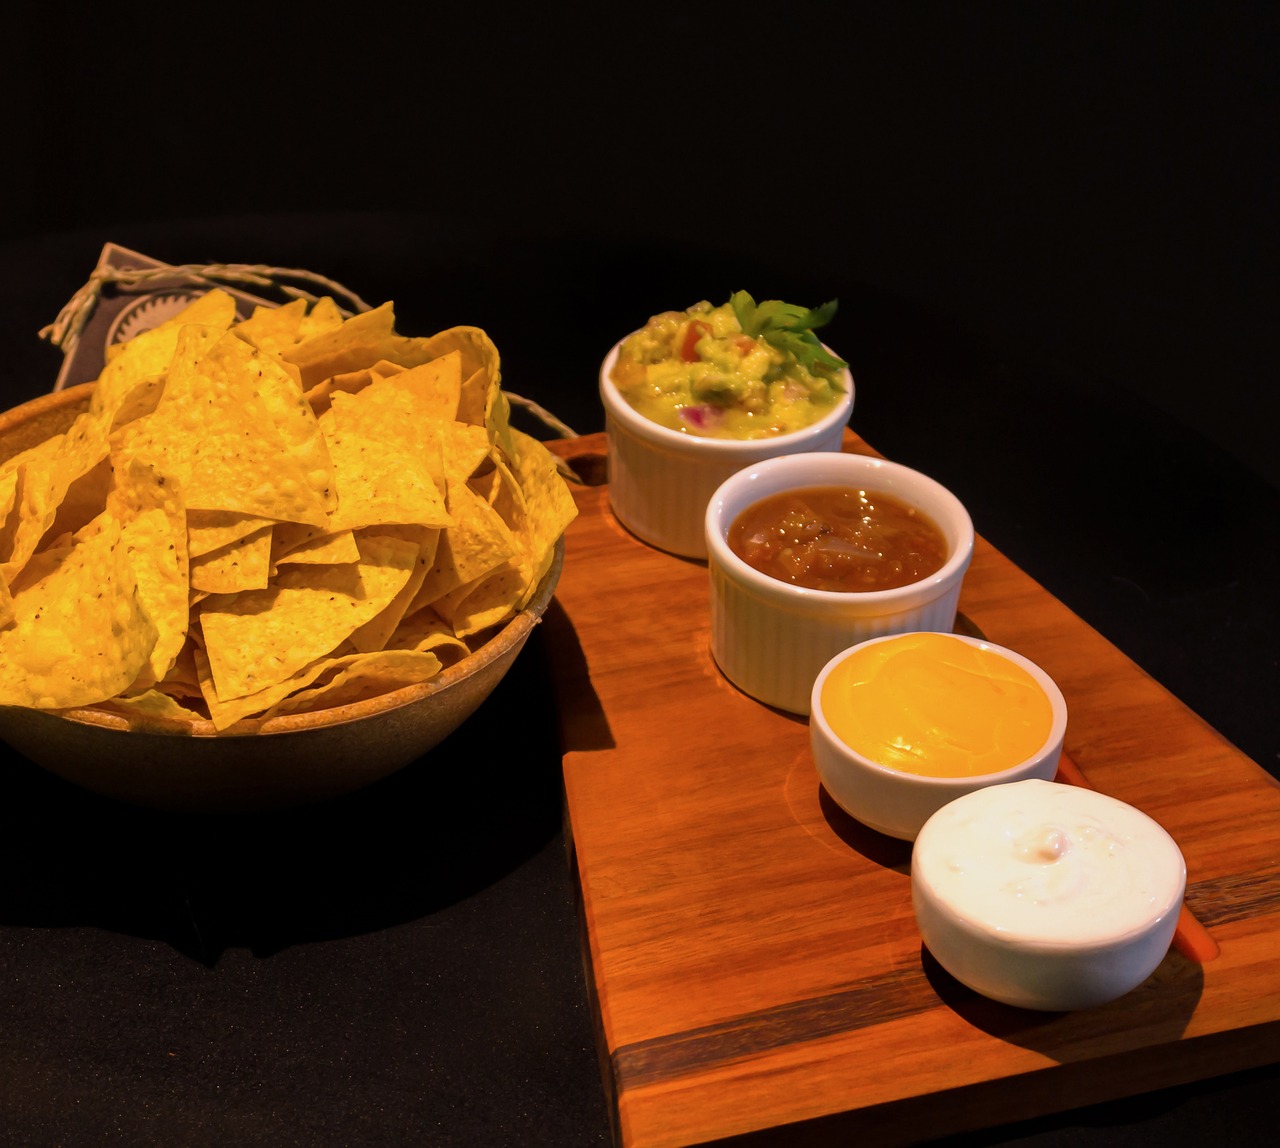 Acılı Meksika taco tarifi: Chipotle soslu